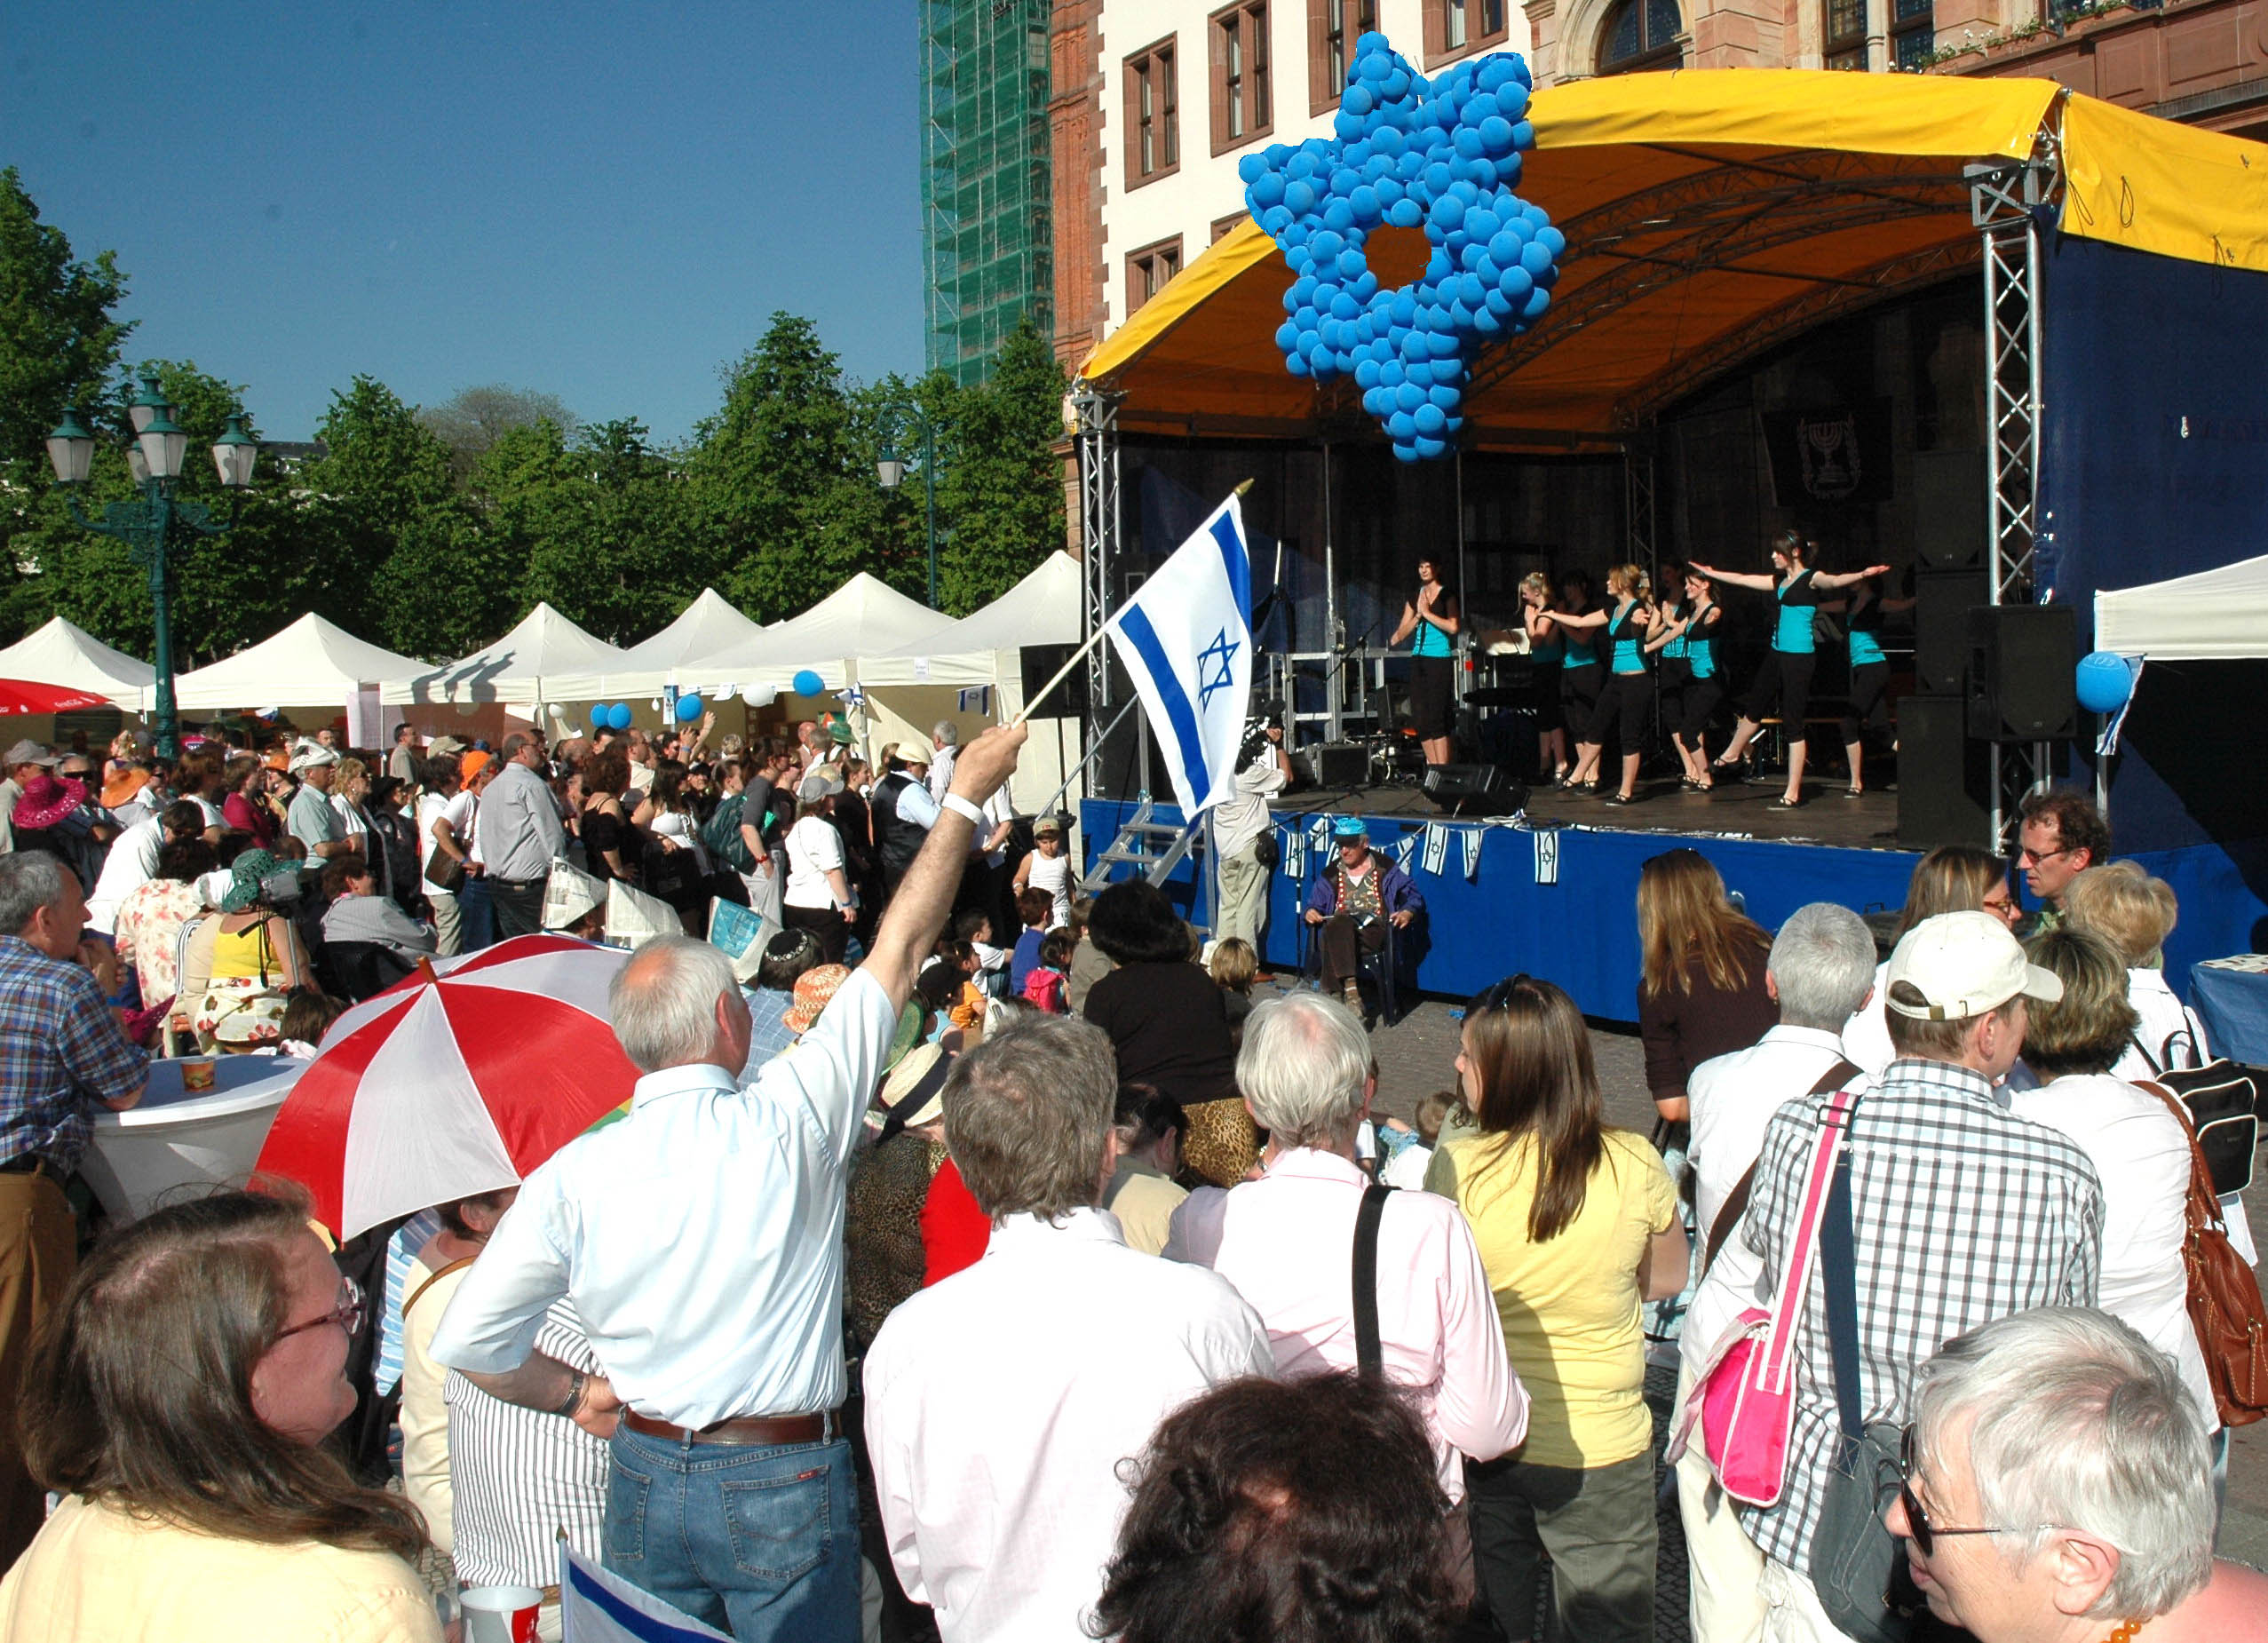 2008: Feier anlässlich des 60. Jahrestags der Gründung des Staates Israel vor dem Wiesbadener Rathaus. Fotograf: Igor Eisenschtat. Sammlung Jüdische Gemeinde Wiesbaden